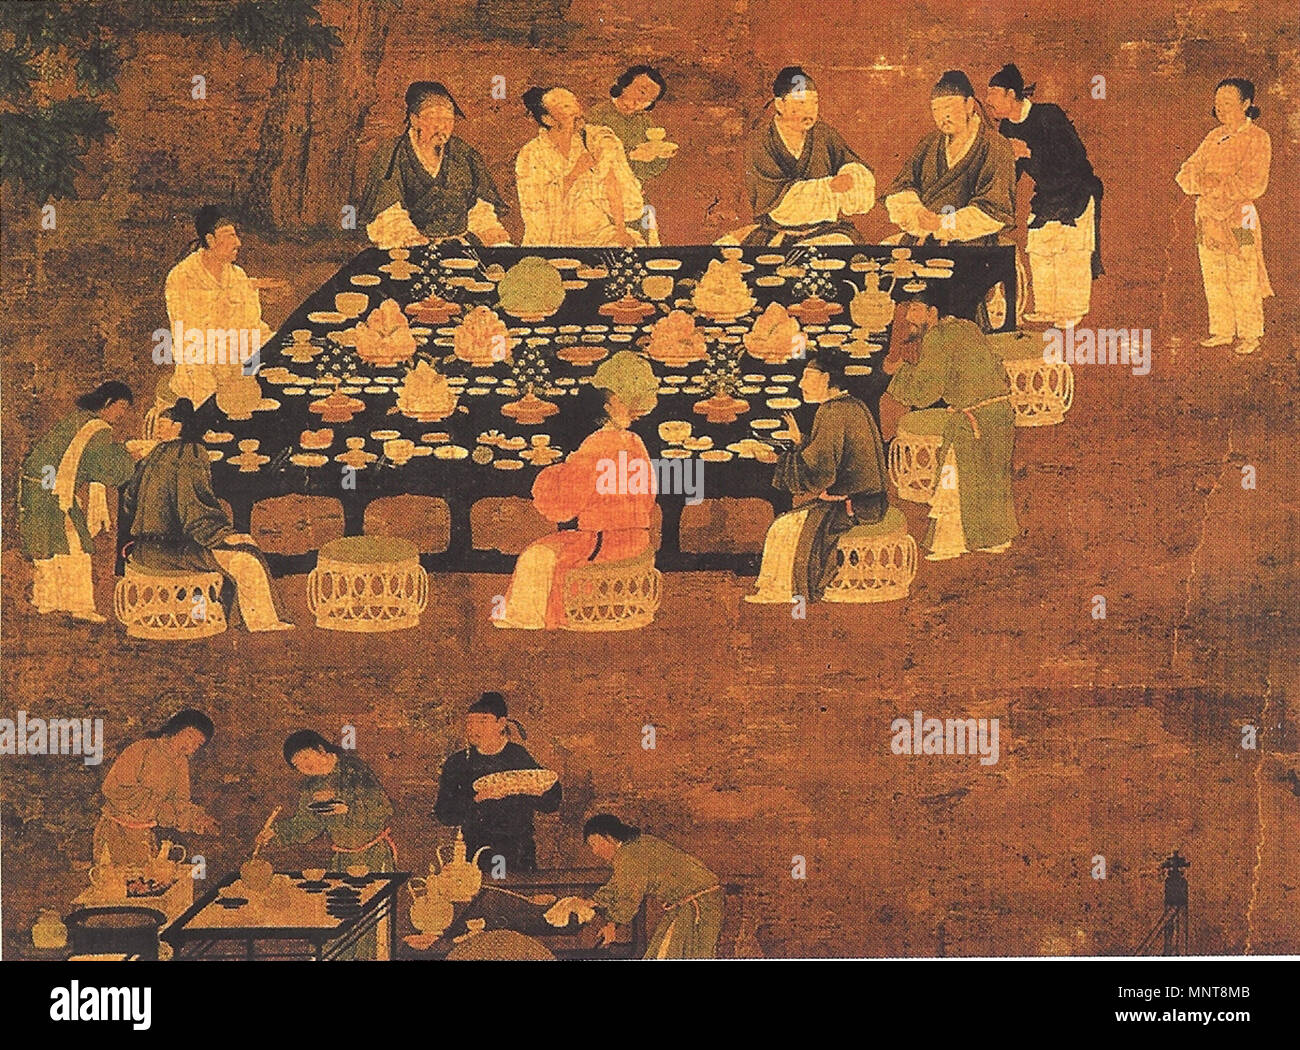 . Eine elegante Party (Detail), ein Bild von einer kleinen chinesischen Bankett bewirtet durch den Kaiser für Gelehrte - Beamte aus der Song Dynastie (960-1279). Obwohl der Song Zeit gemalt, ist es höchstwahrscheinlich eine Reproduktion eines früheren Tang Dynastie (618-907) Arbeit der Kunst der Malerei Kaiser Huizong der Song (r zugeschrieben wird. 1100-1125 AD). 6. August 2007. PericlesofAthens 1131 Song Dynastie elegante Party Stockfoto